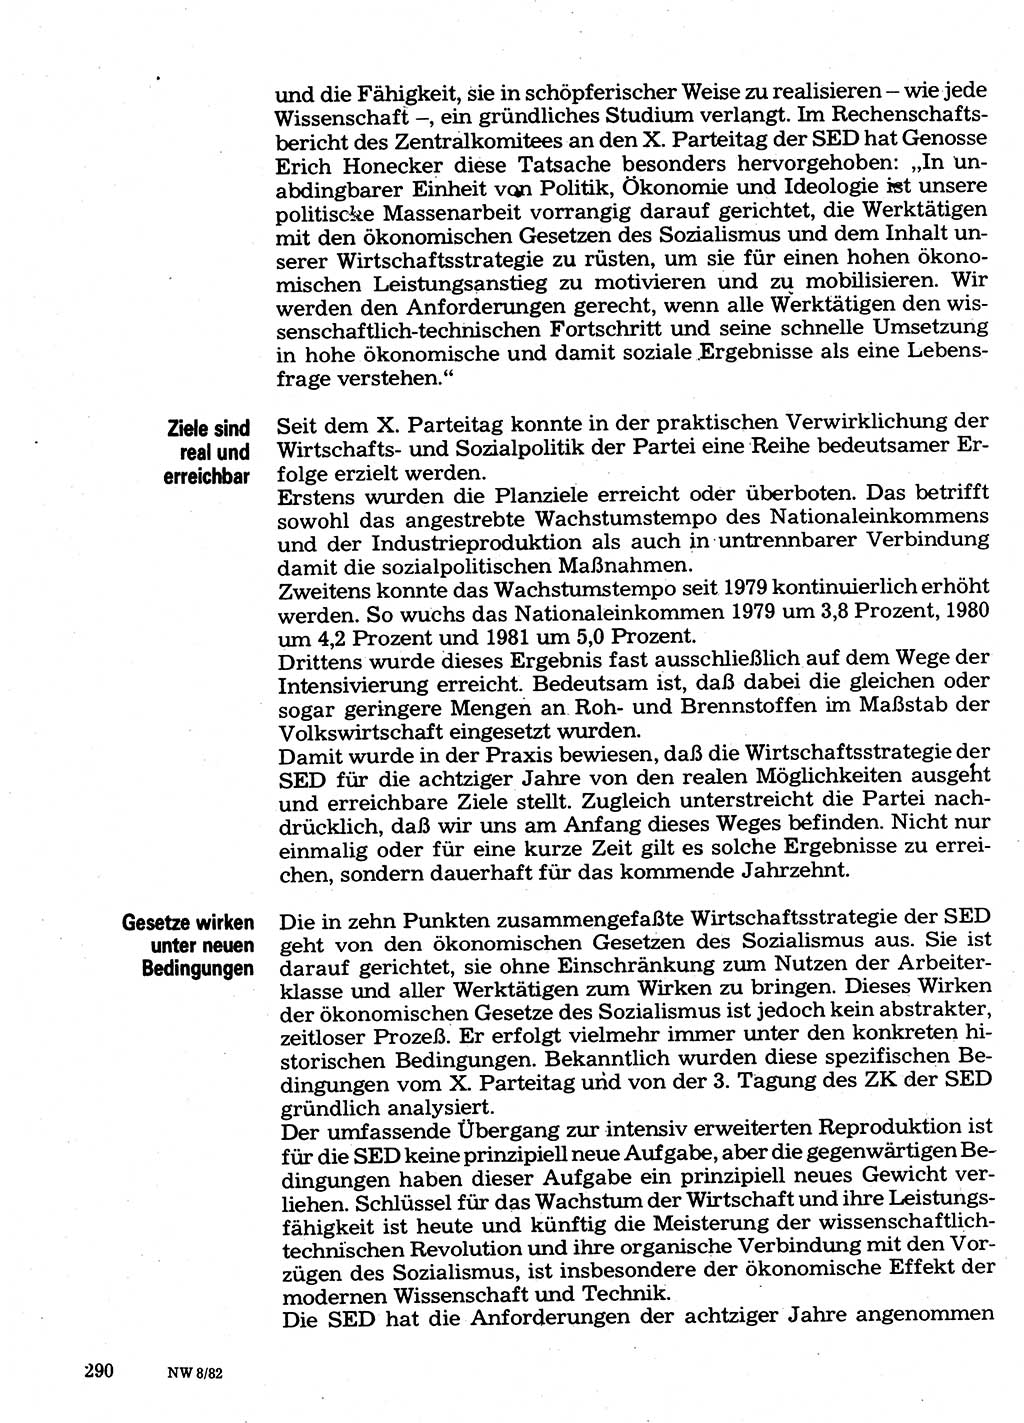 Neuer Weg (NW), Organ des Zentralkomitees (ZK) der SED (Sozialistische Einheitspartei Deutschlands) für Fragen des Parteilebens, 37. Jahrgang [Deutsche Demokratische Republik (DDR)] 1982, Seite 290 (NW ZK SED DDR 1982, S. 290)